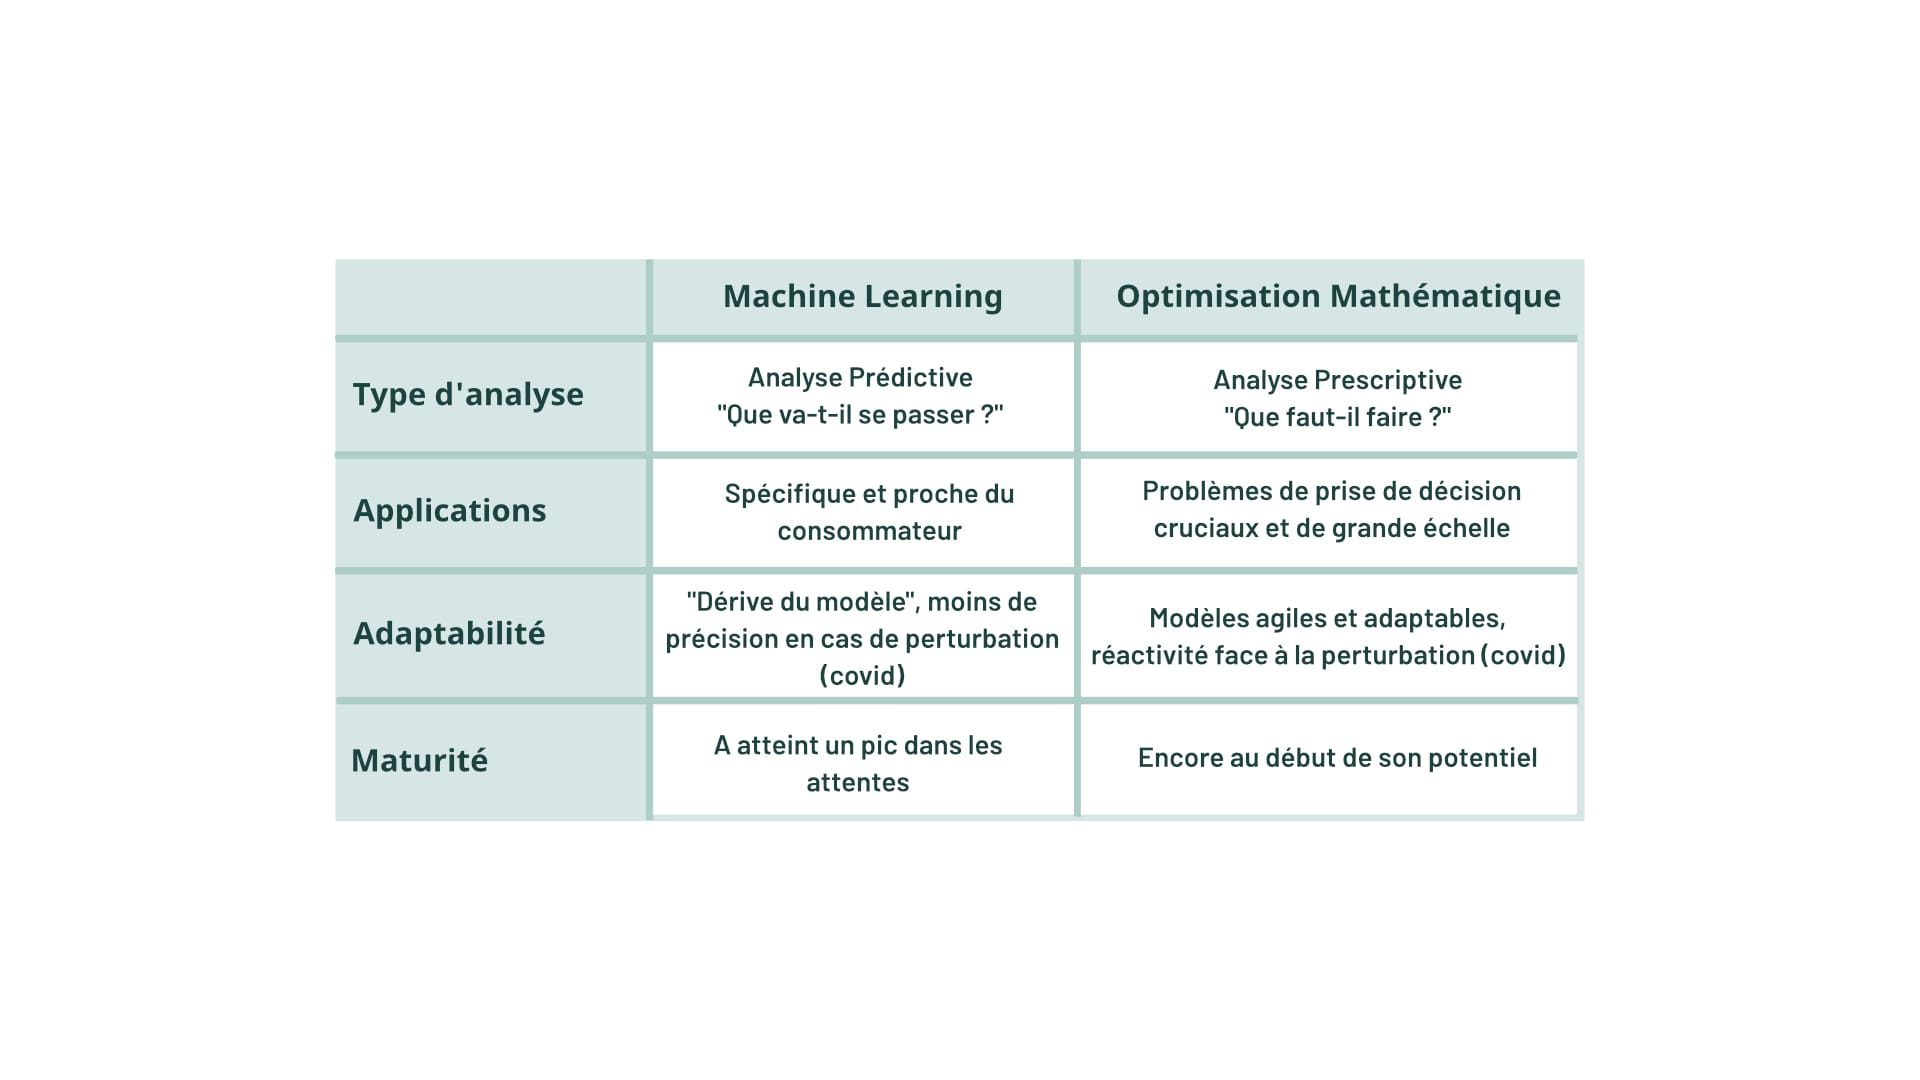  Différences principales entre le Machine Learning et l'Optimisation Mathématique 